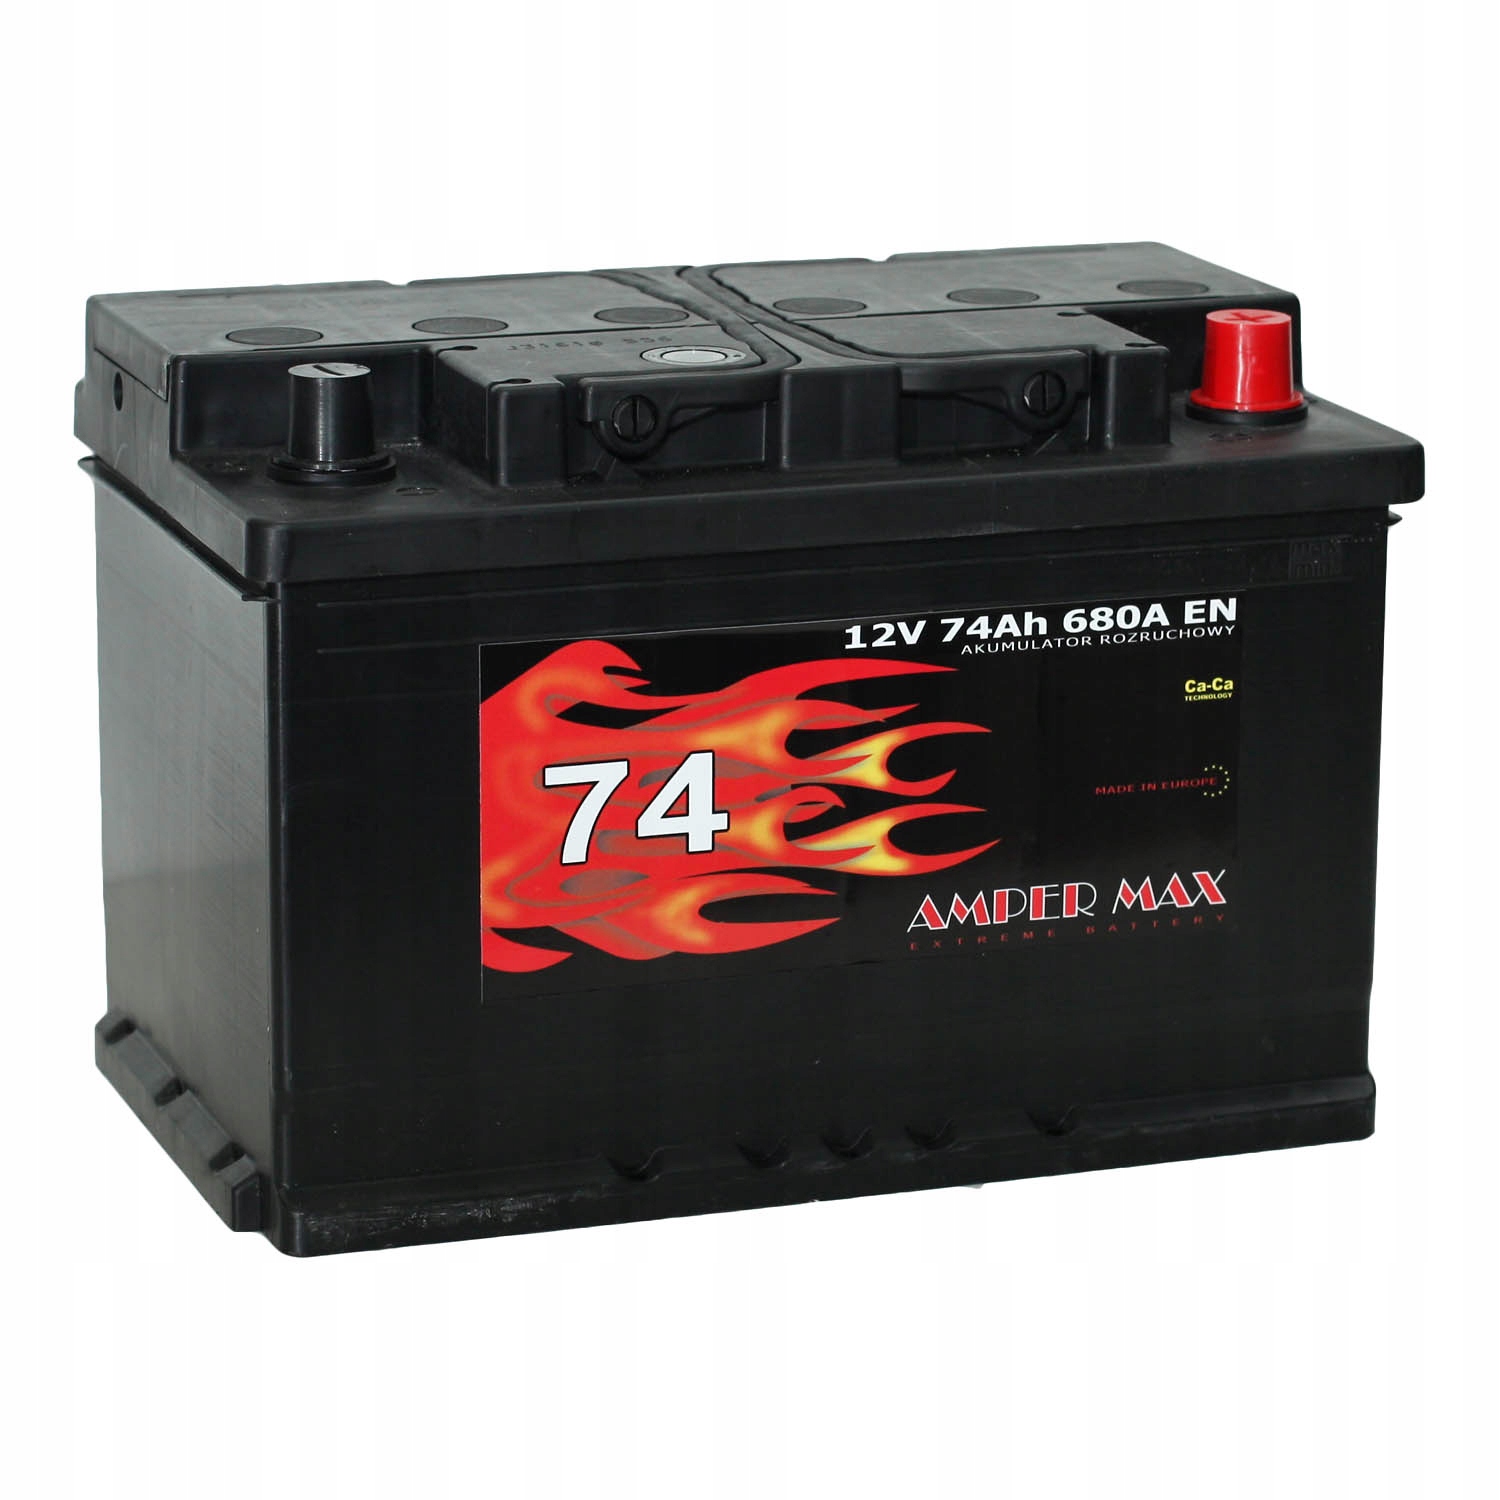 Akumulator Ampermax 12V74 AH 680 A P+ Amper Max 74 za 330 zł z Szczecin -   - (11873476620)